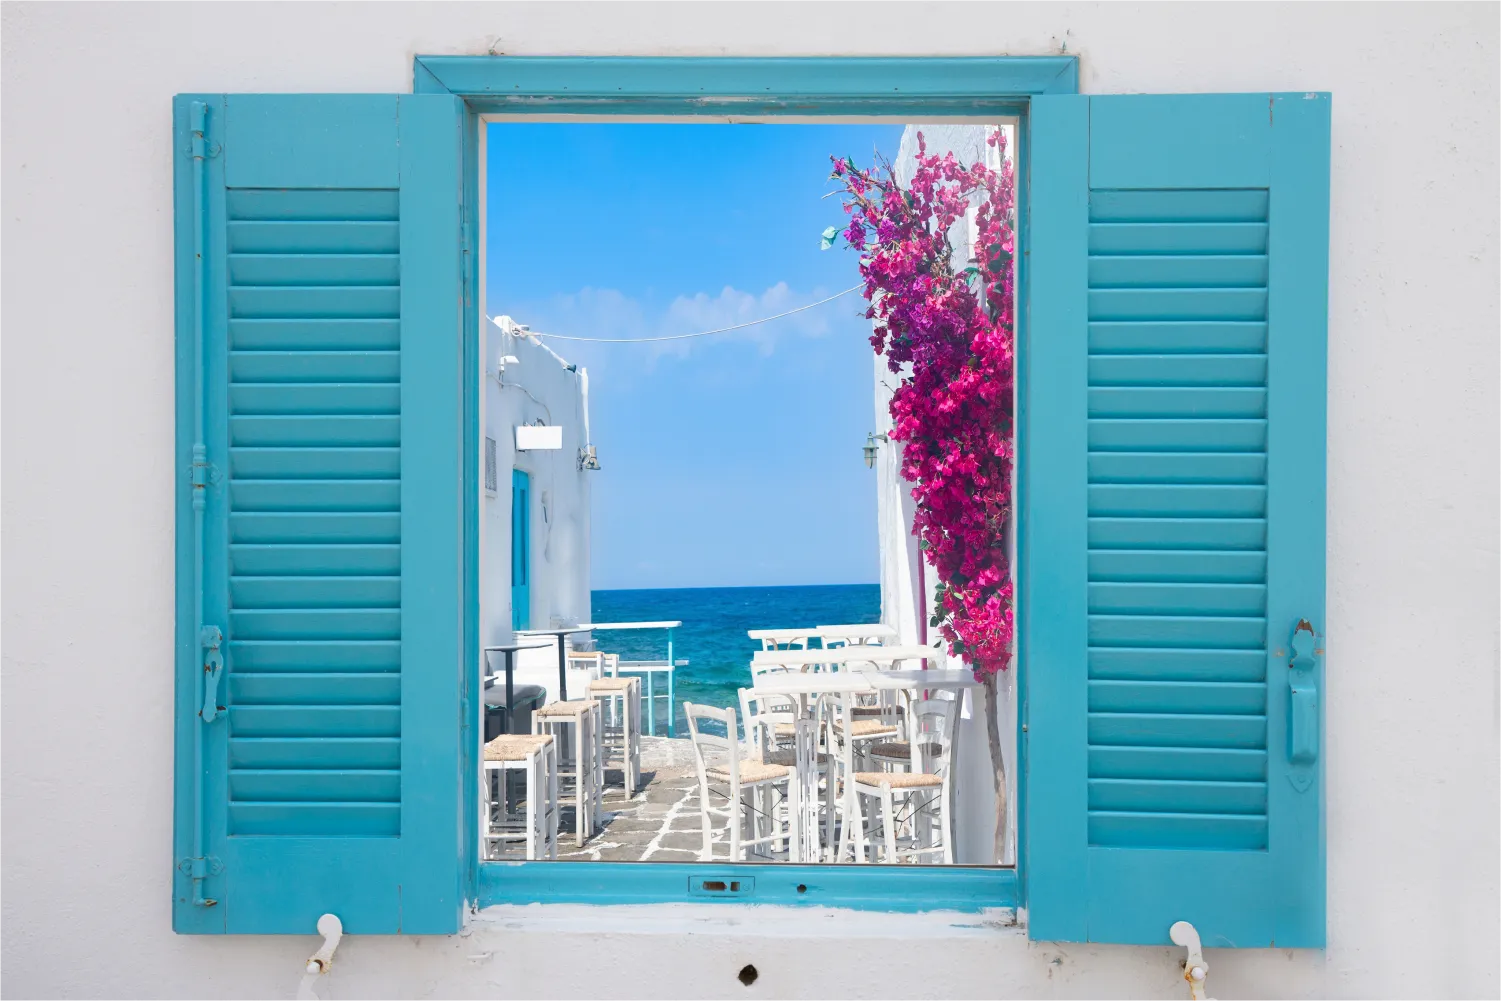 Belle vue d'une rue étroite se terminant dans la mer à travers une fenêtre à Paros